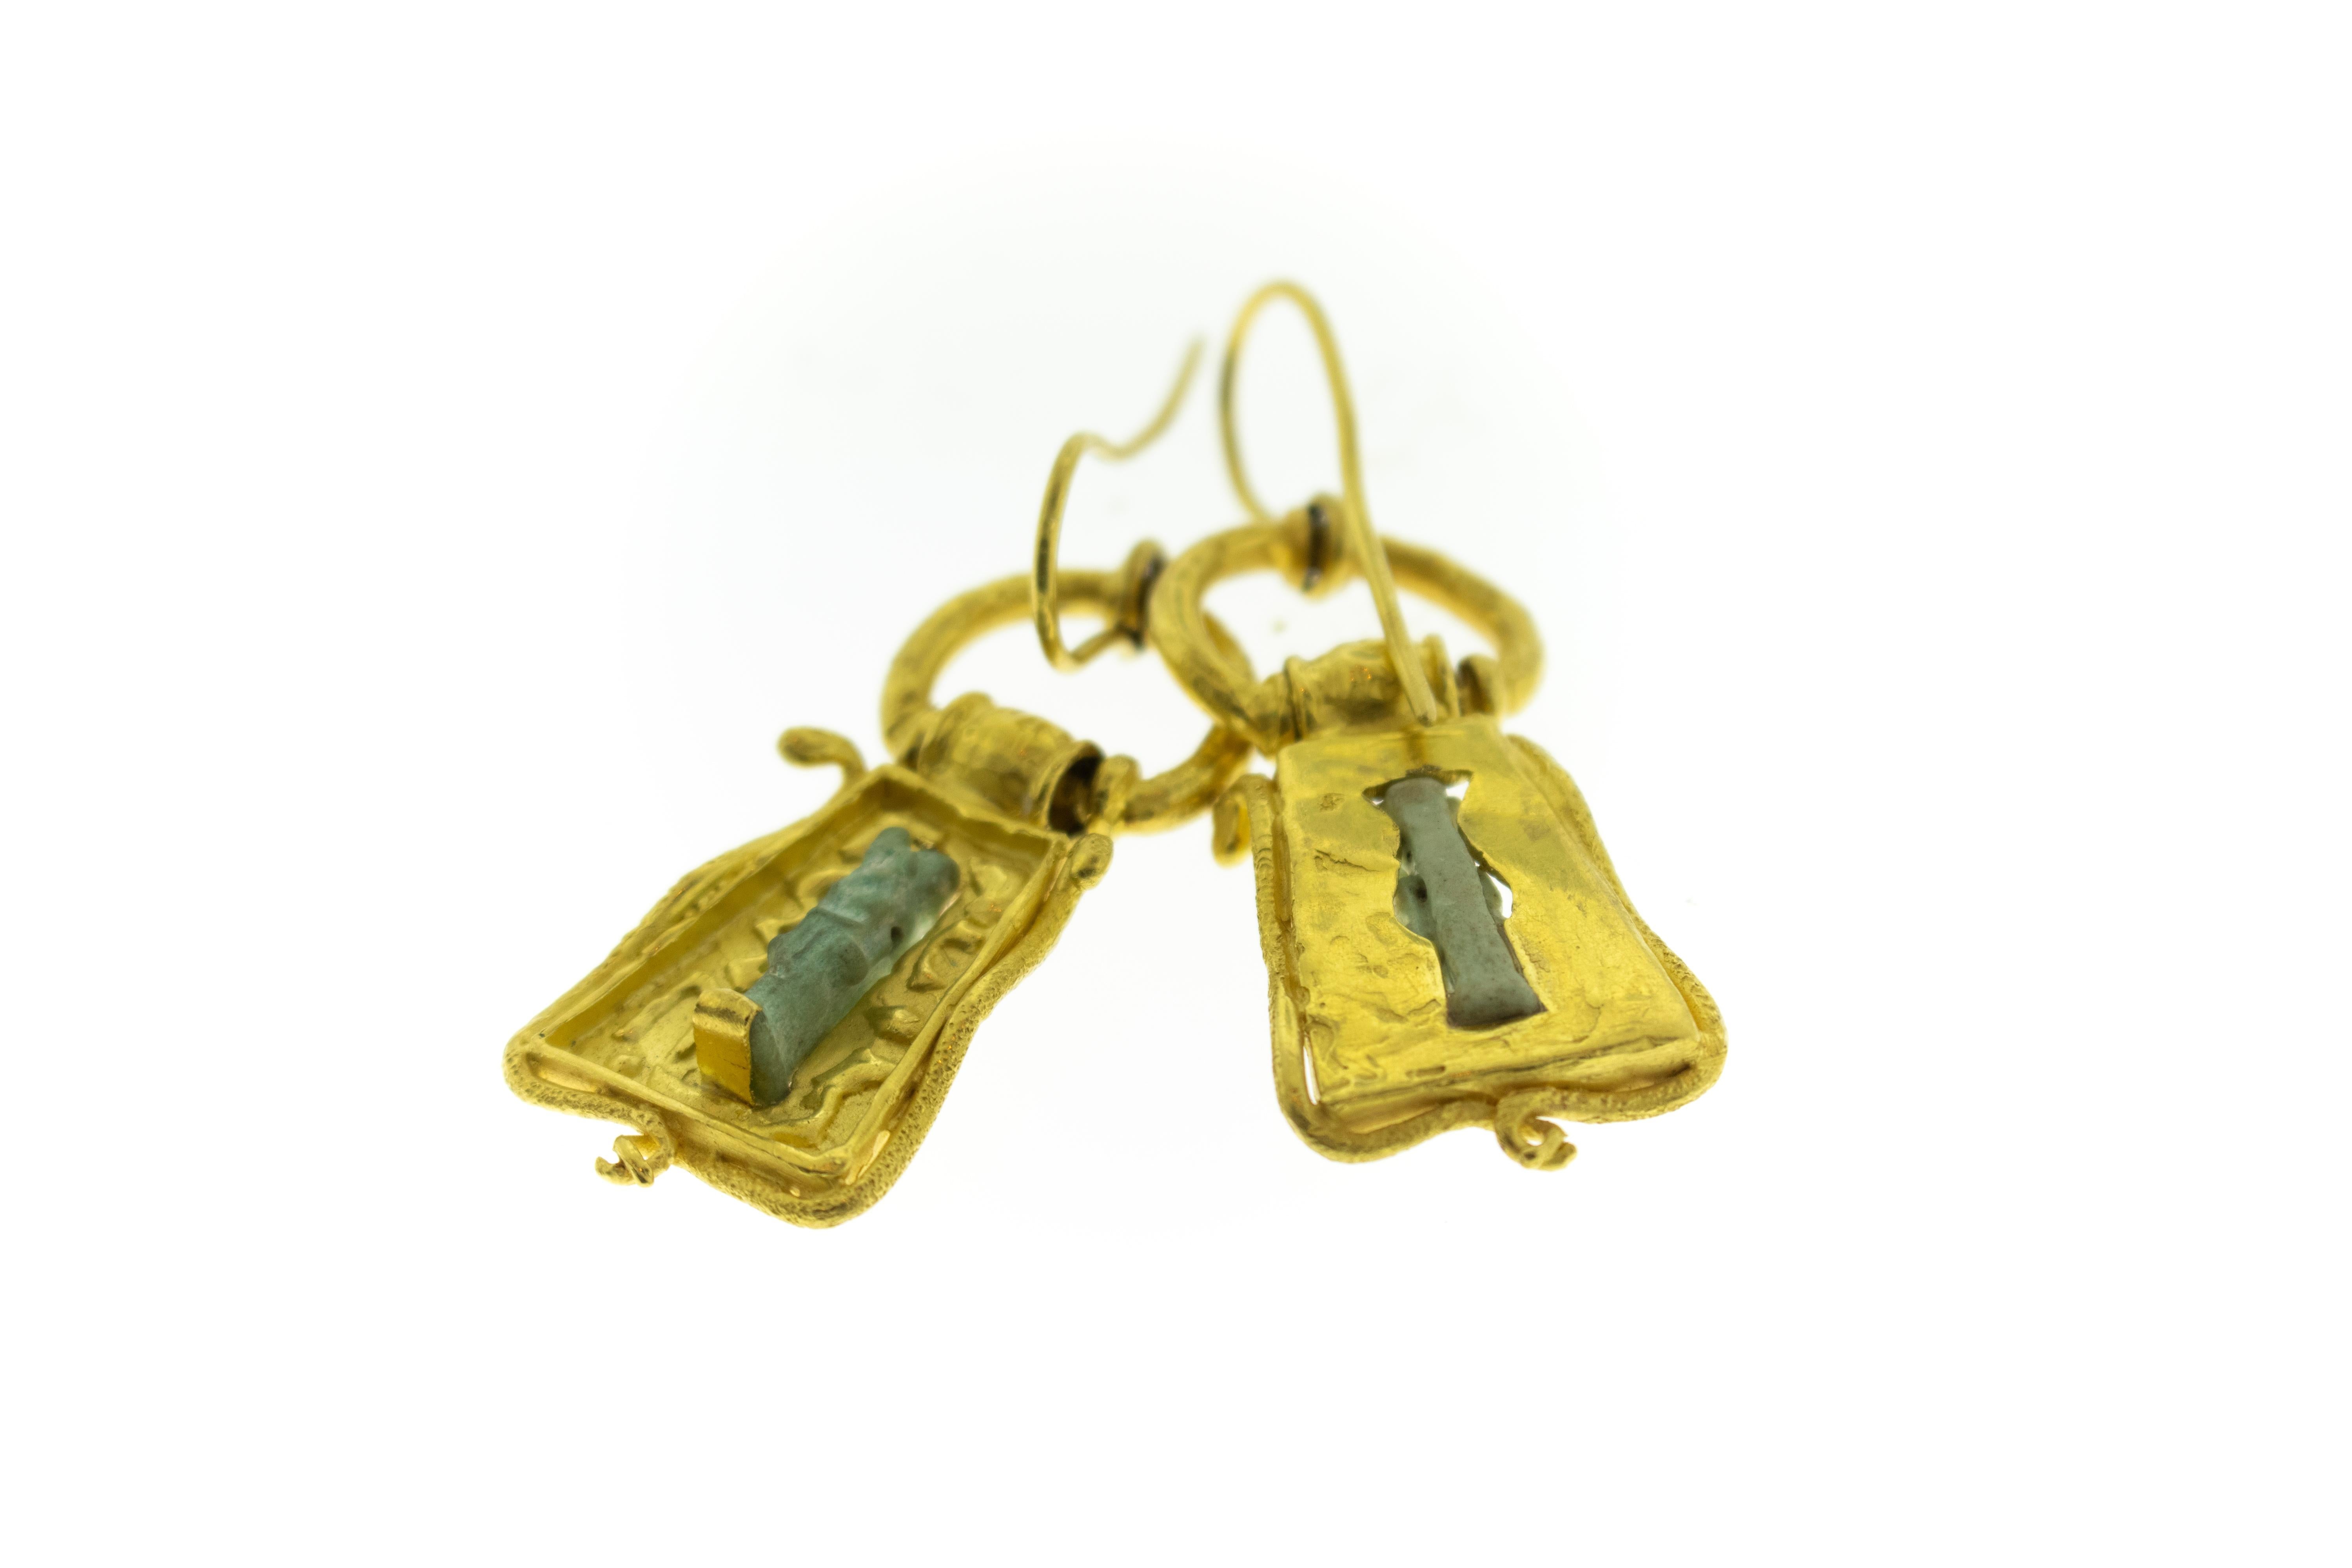 Antike ägyptische Stein Artefakt 22k Gold Ohrringe. Figuren sind eine Farbe wie ein verrostetes Kupfer hellgrün. 22k Gold Gehäuse wurde nicht in der alten Zeit gemacht. Es sind lange Ohrringe mit Haken.  Ohrringe sind 2,25 Zoll lang, 1 Zoll breit